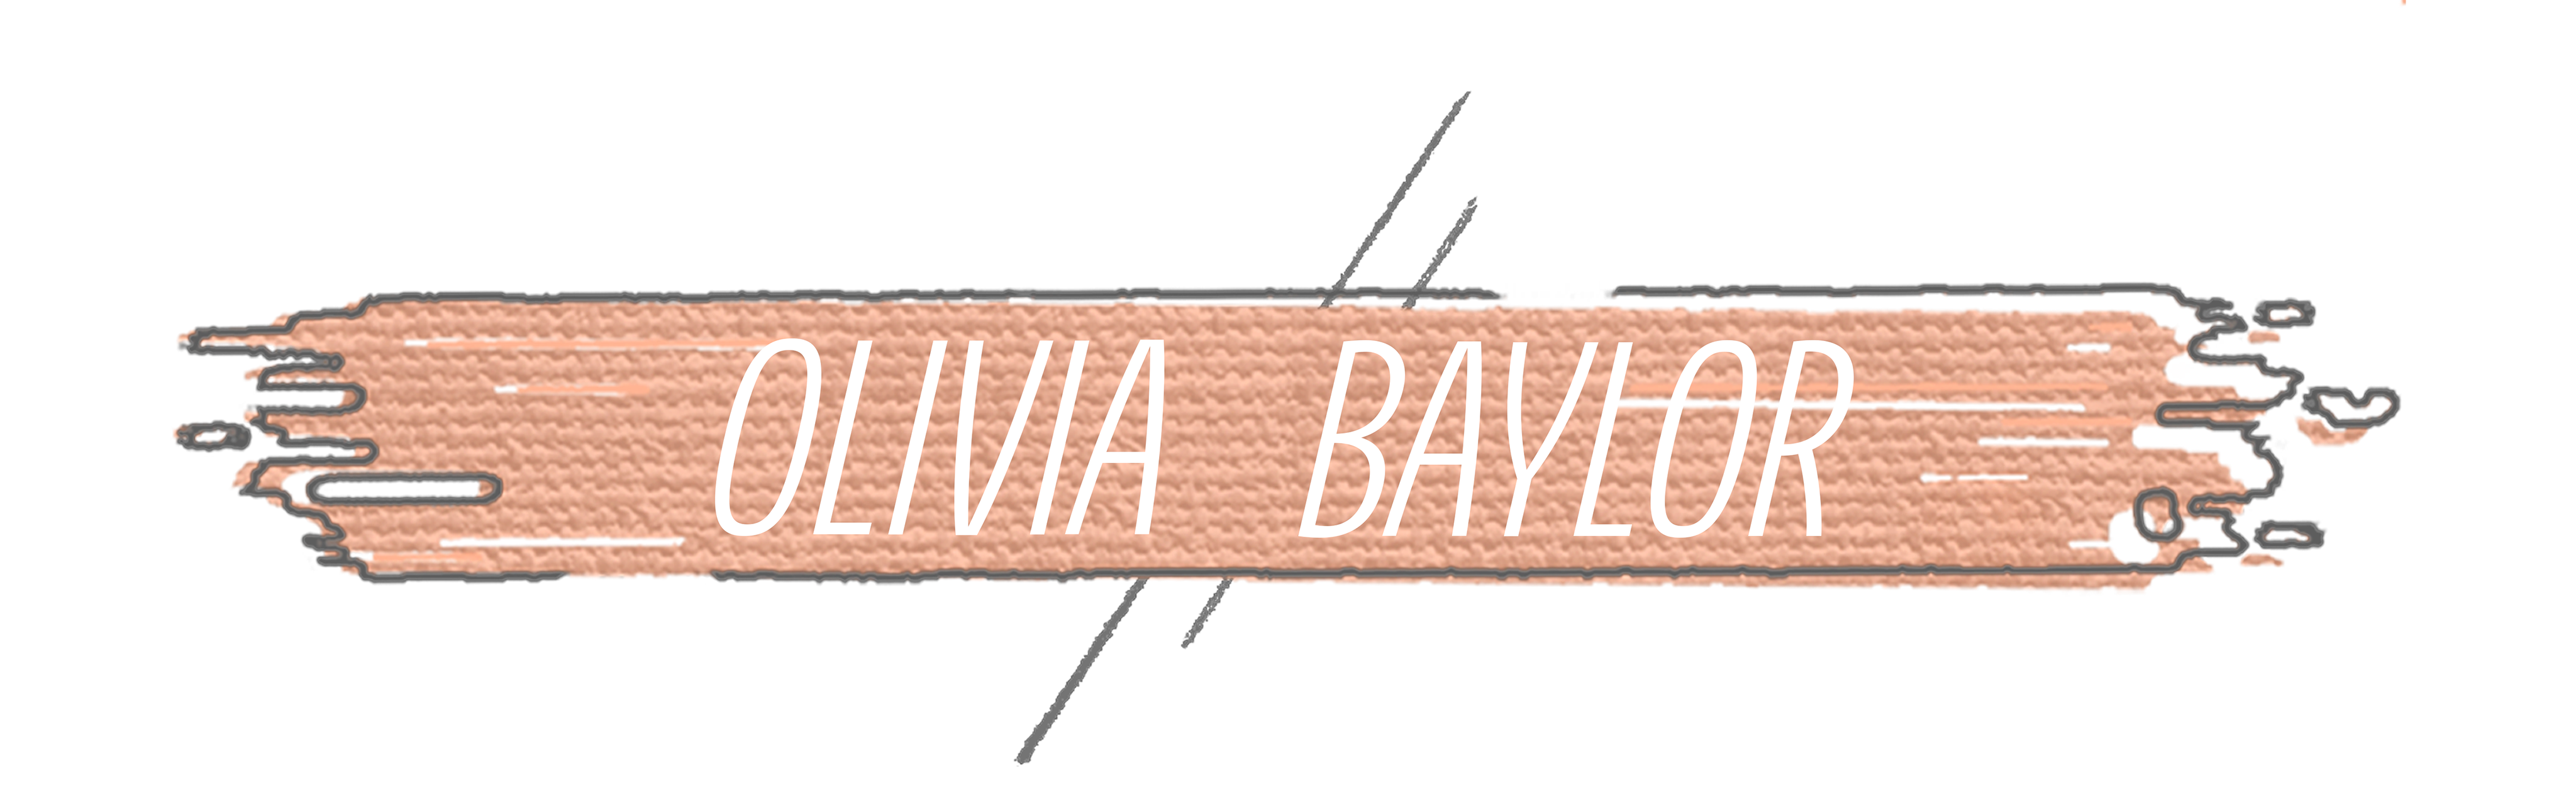 Olivia Baylor